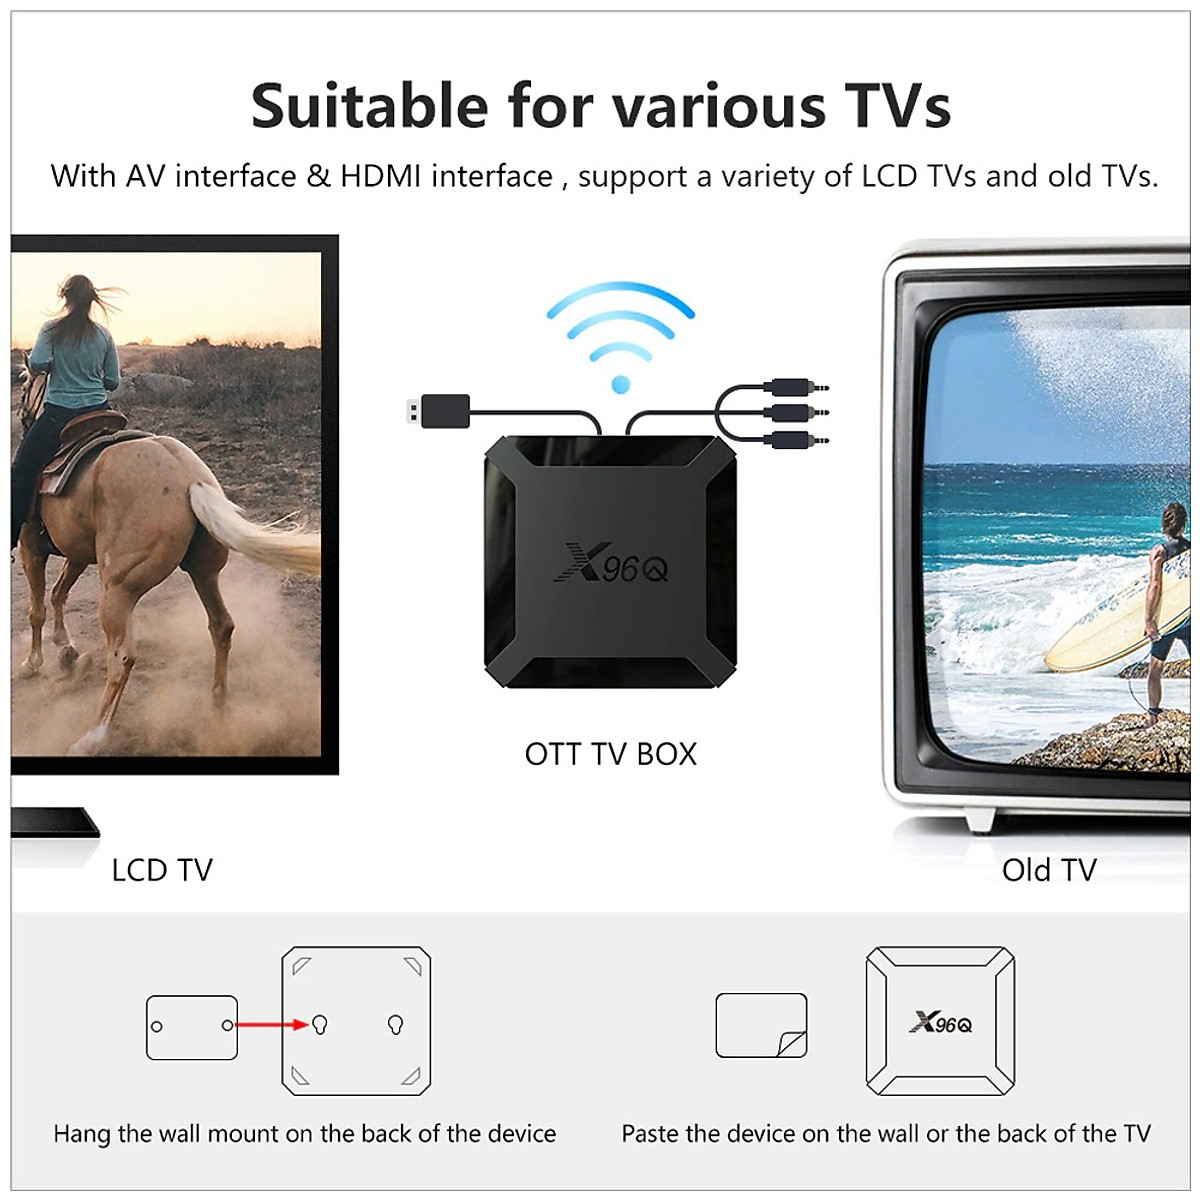 Android tivi X96Q có điều khiển giọng nói cử chỉ tay người dùng hỗ trợ tìm kiếm bằng tiếng việt Android 10 cài sẵn chương trình tivi truyền hình cáp, Phim HD miễn phí vĩnh viễn - Hàng Nhập Khẩu